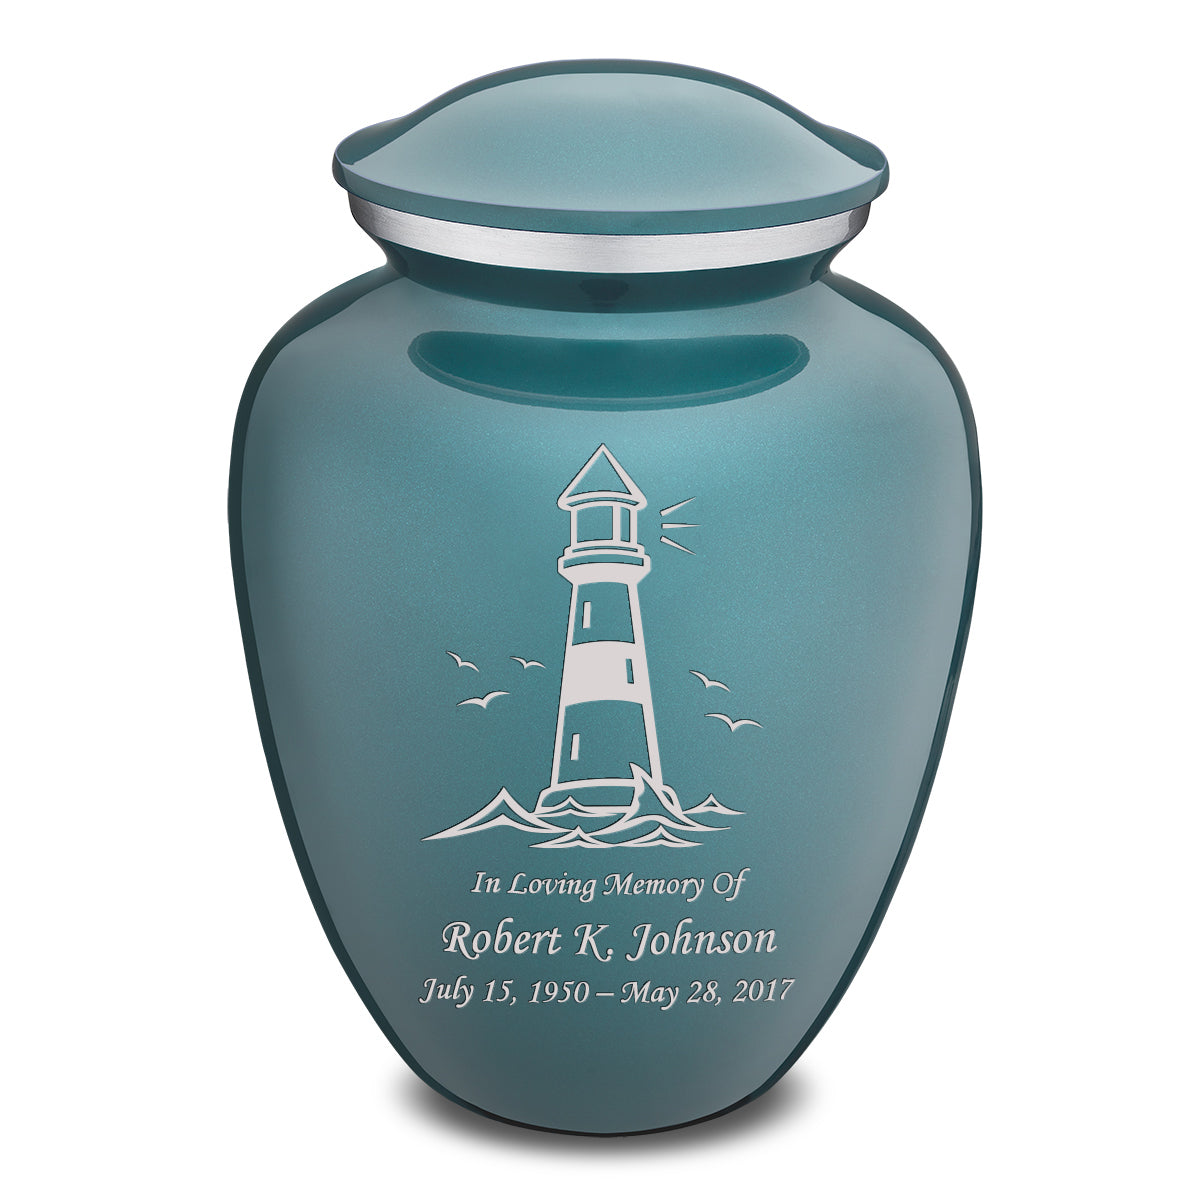 Adult Embrace Teal Lighthouse Cremation Urn